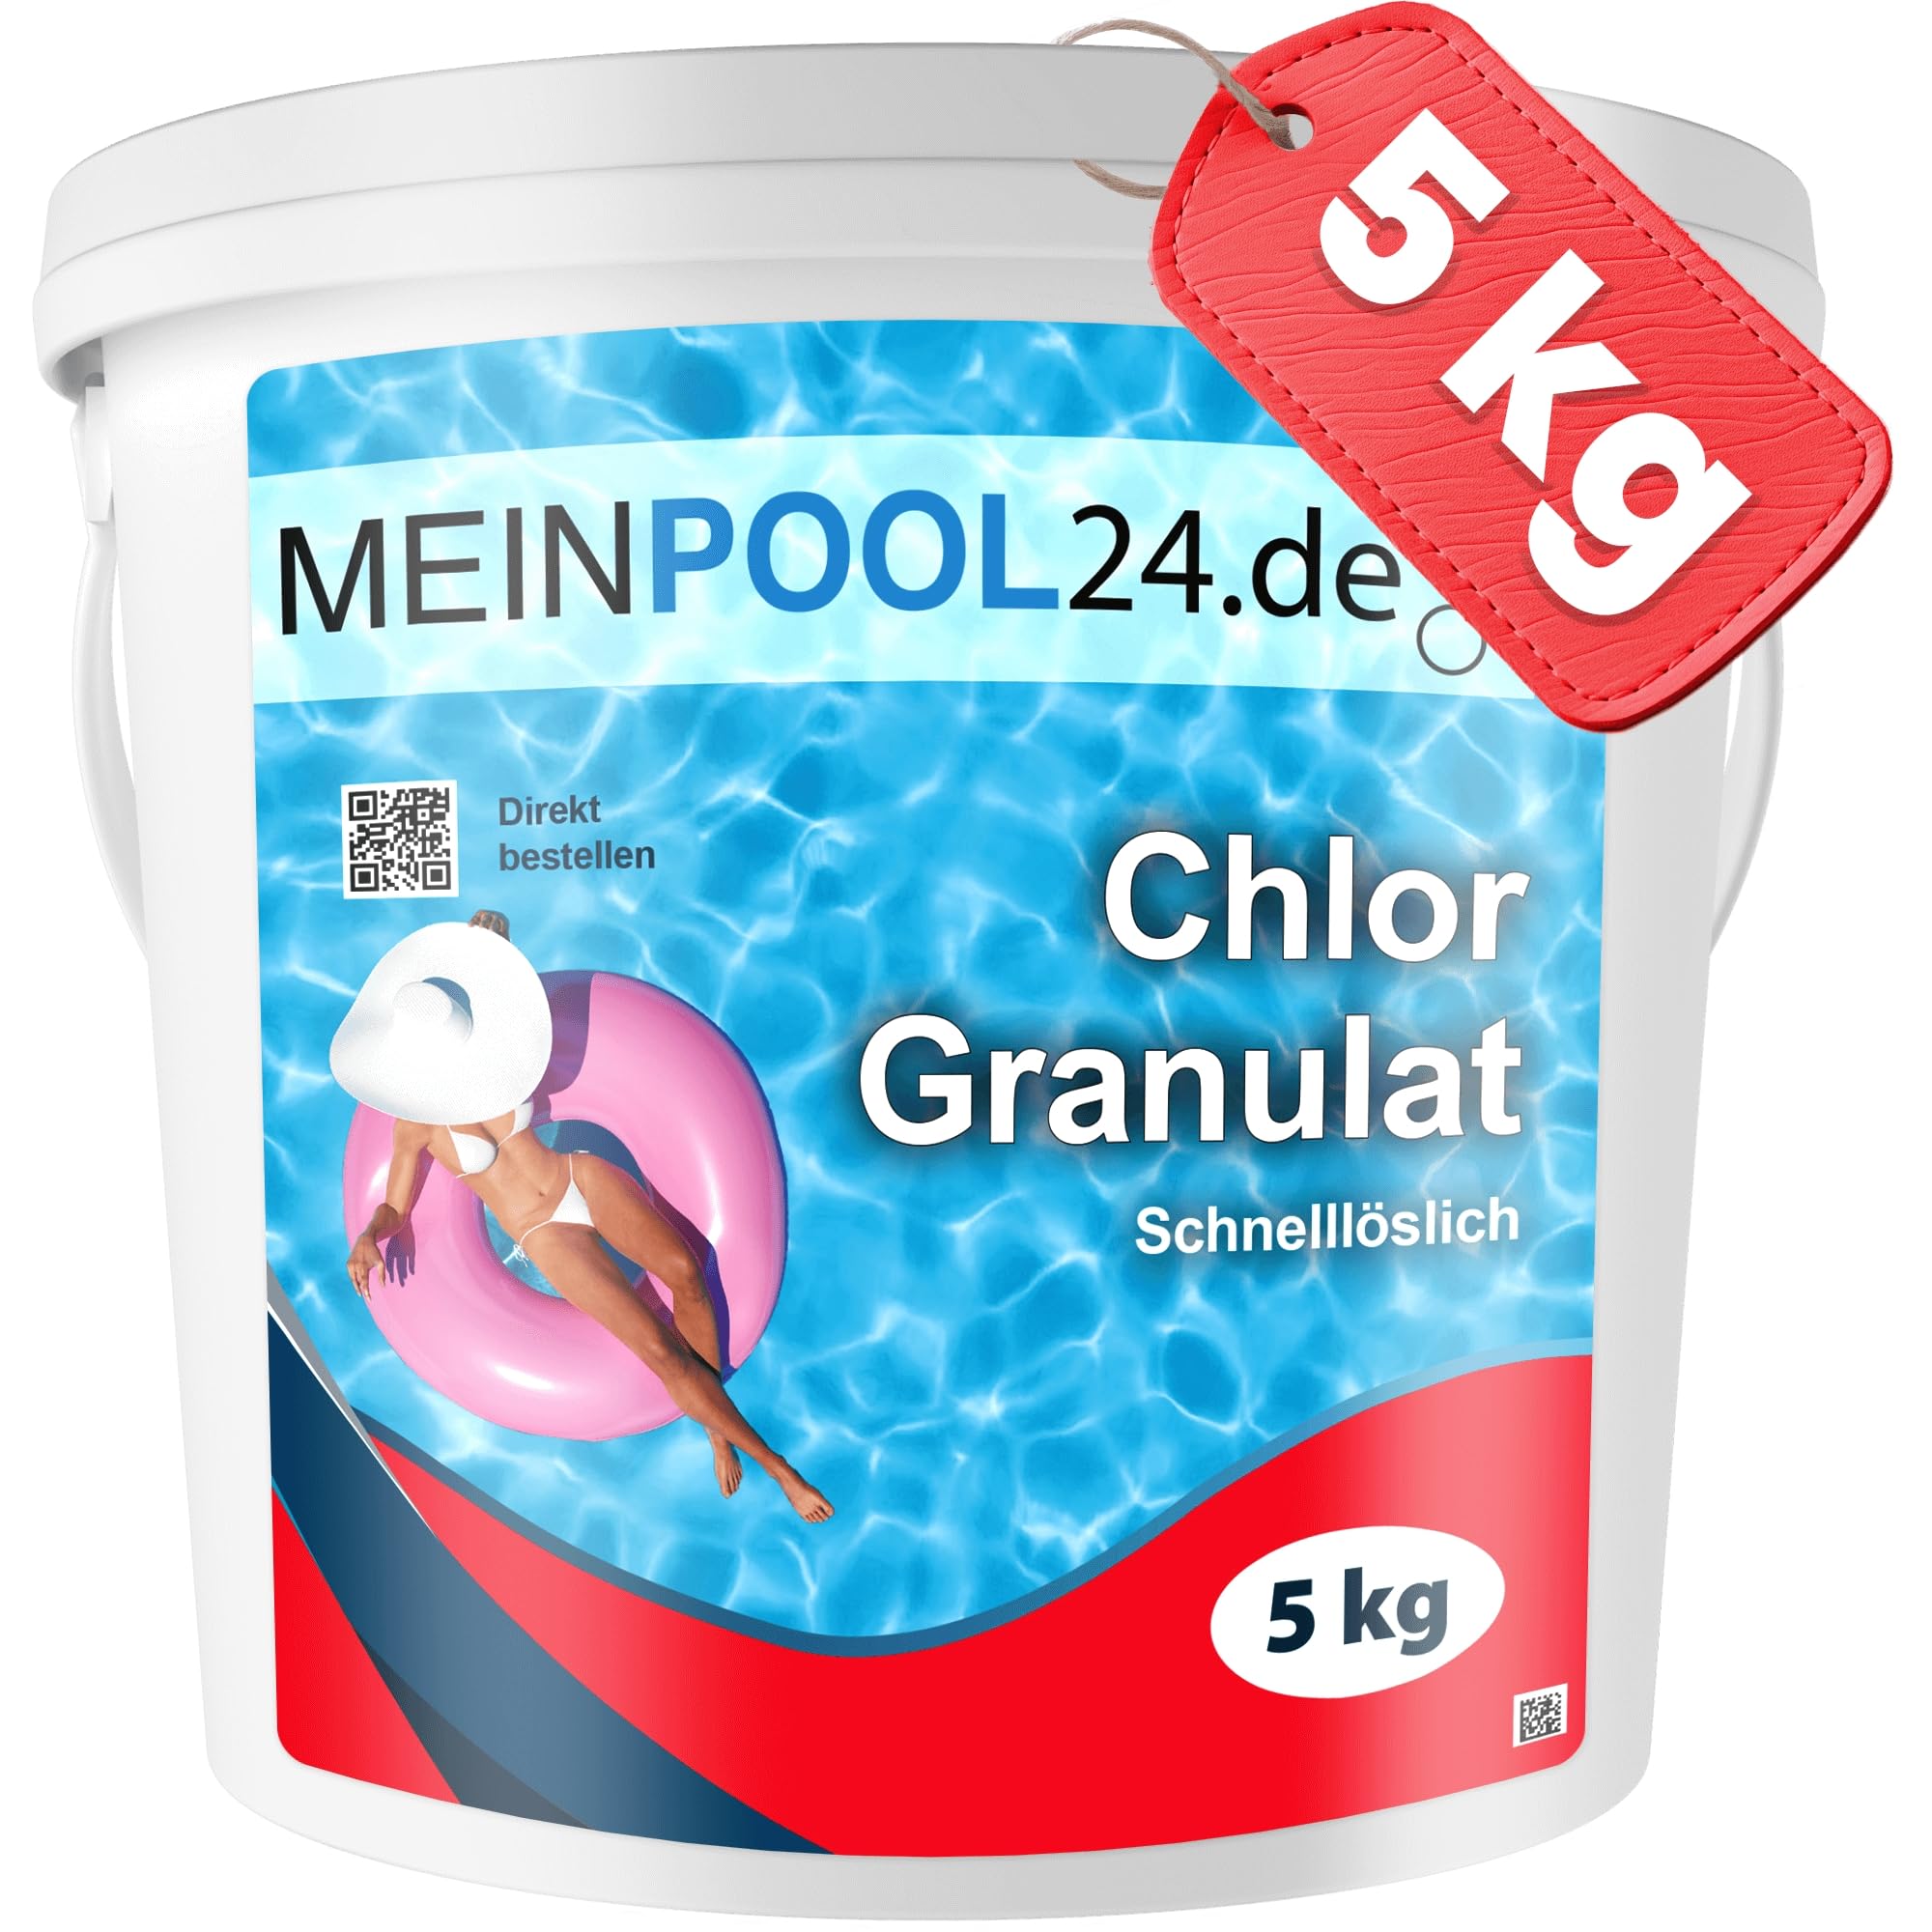 5 kg Chlorgranulat für den Swimmingpool Marke Meinpool24.de